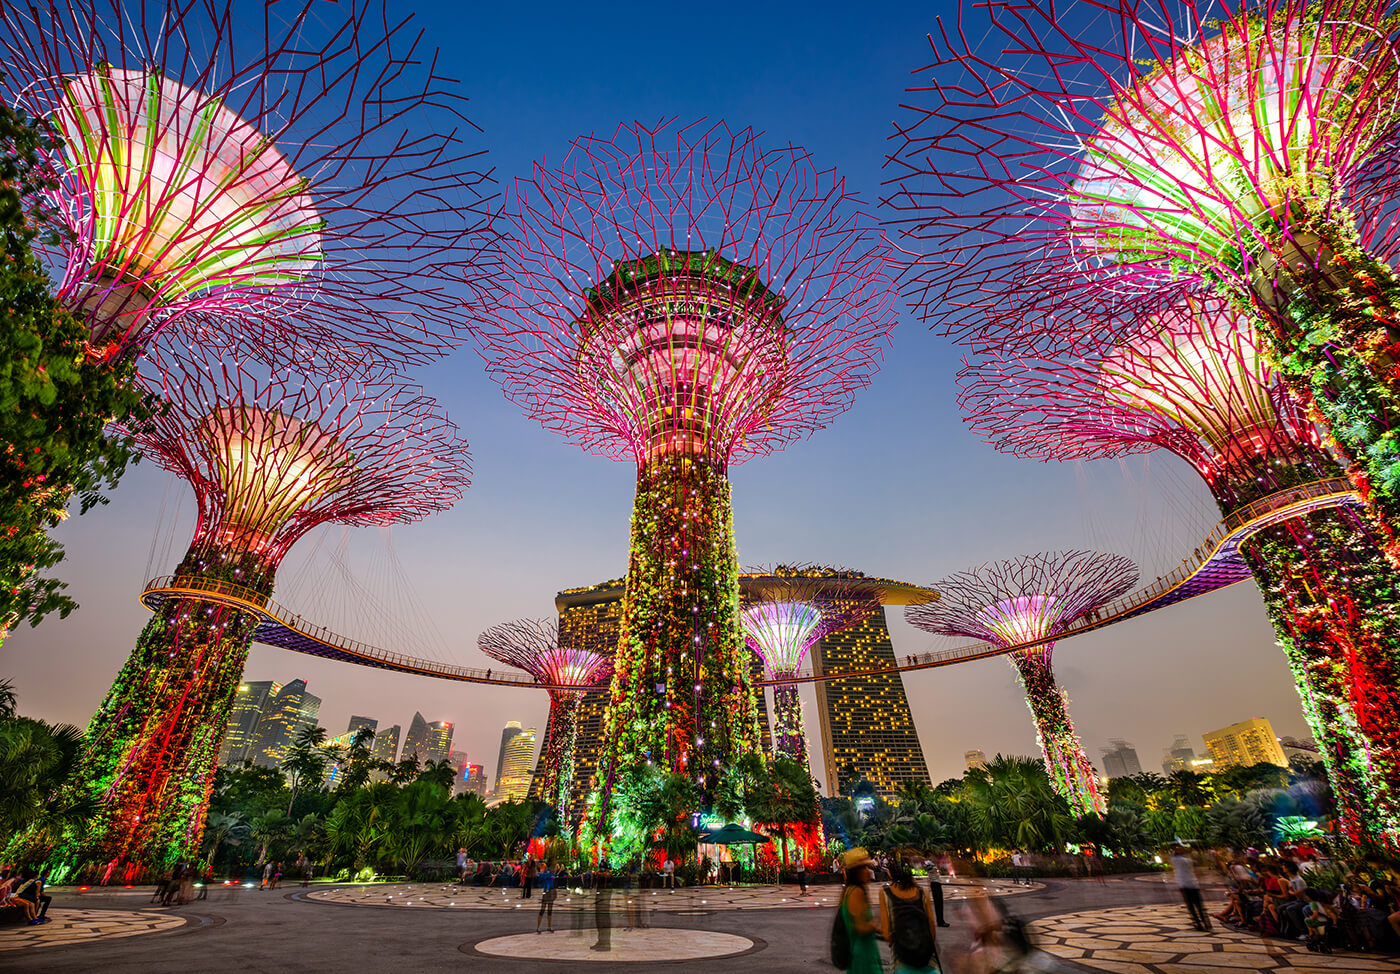 Du lịch tự túc Singapore thì nên đi đâu? - iVIVU.com